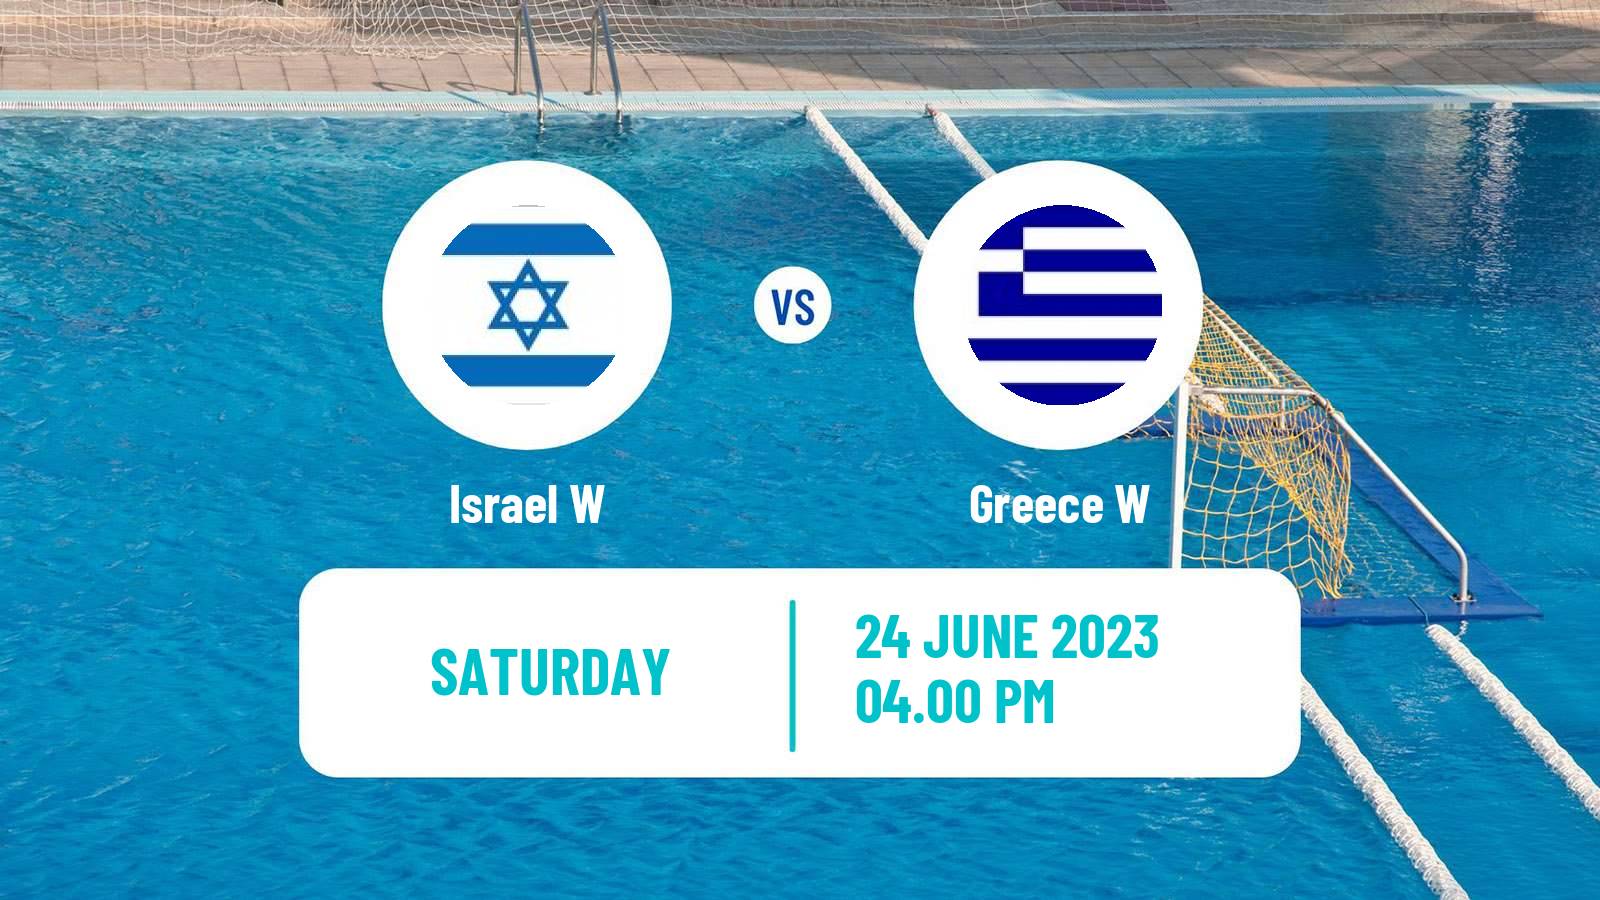 Water polo World Cup Water Polo Women Israel W - Greece W